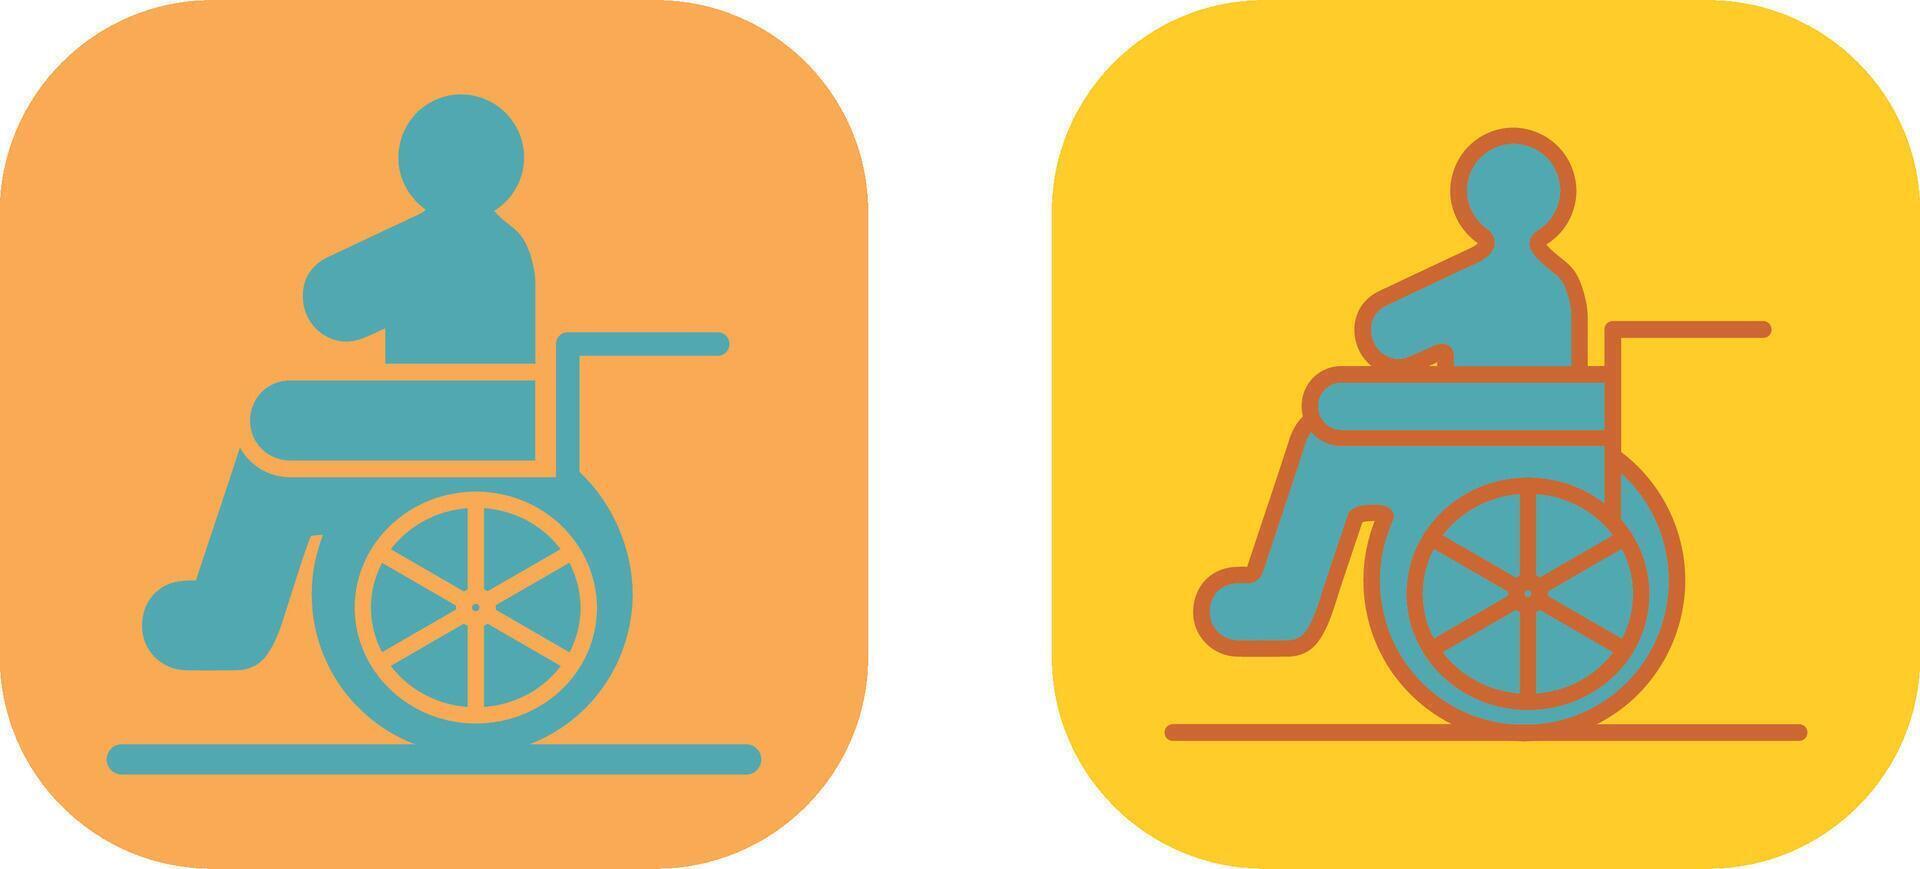 Wheelchair Icon Design vector